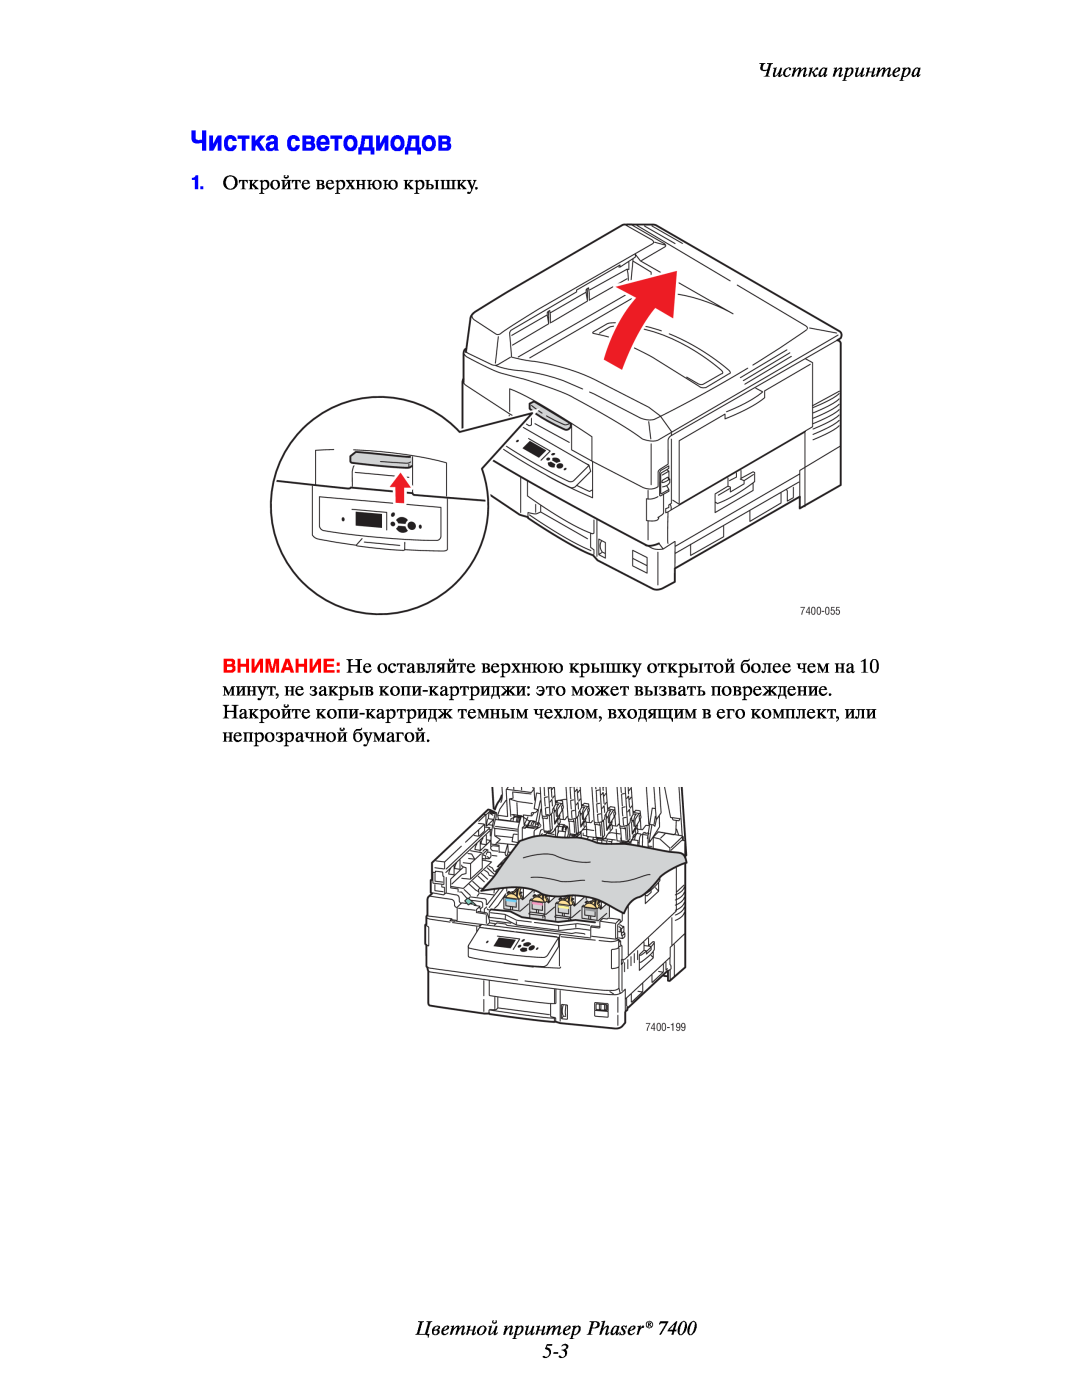 Xerox 7400 manual Чистка светодиодов, Цветной принтер Phaser 5-3, Чистка принтера 